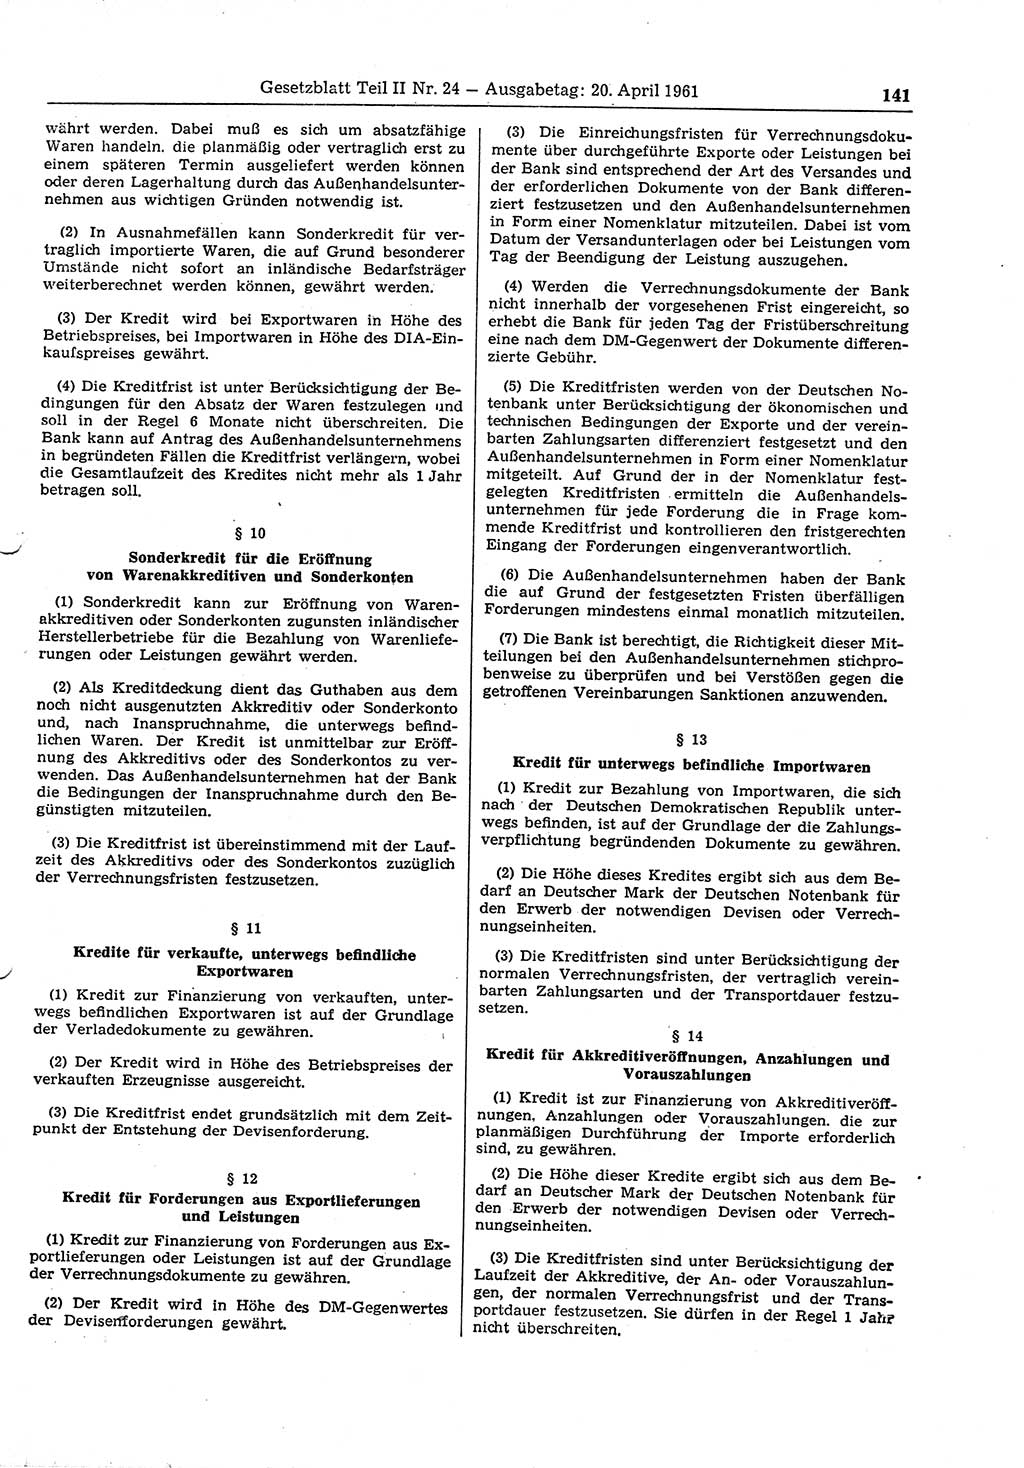 Gesetzblatt (GBl.) der Deutschen Demokratischen Republik (DDR) Teil ⅠⅠ 1961, Seite 141 (GBl. DDR ⅠⅠ 1961, S. 141)